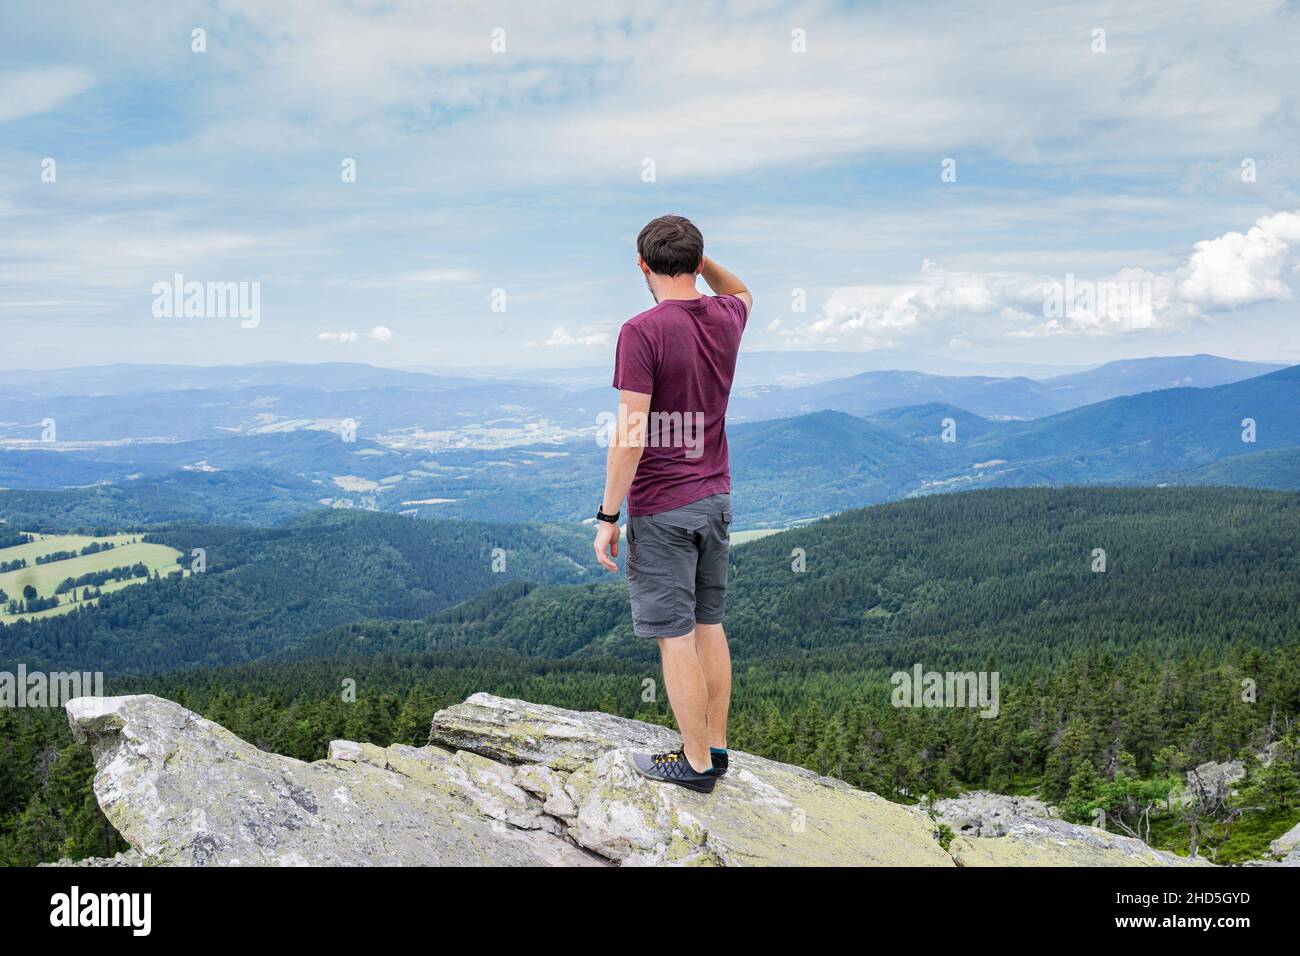 Mann Reisende Gefühl frei genießen Blick auf Mountains.Male stehend auf Felsen nach climbing.Adventure, Sport, Aktivität, Fernweh Freiheit Reisekonzept. Stockfoto